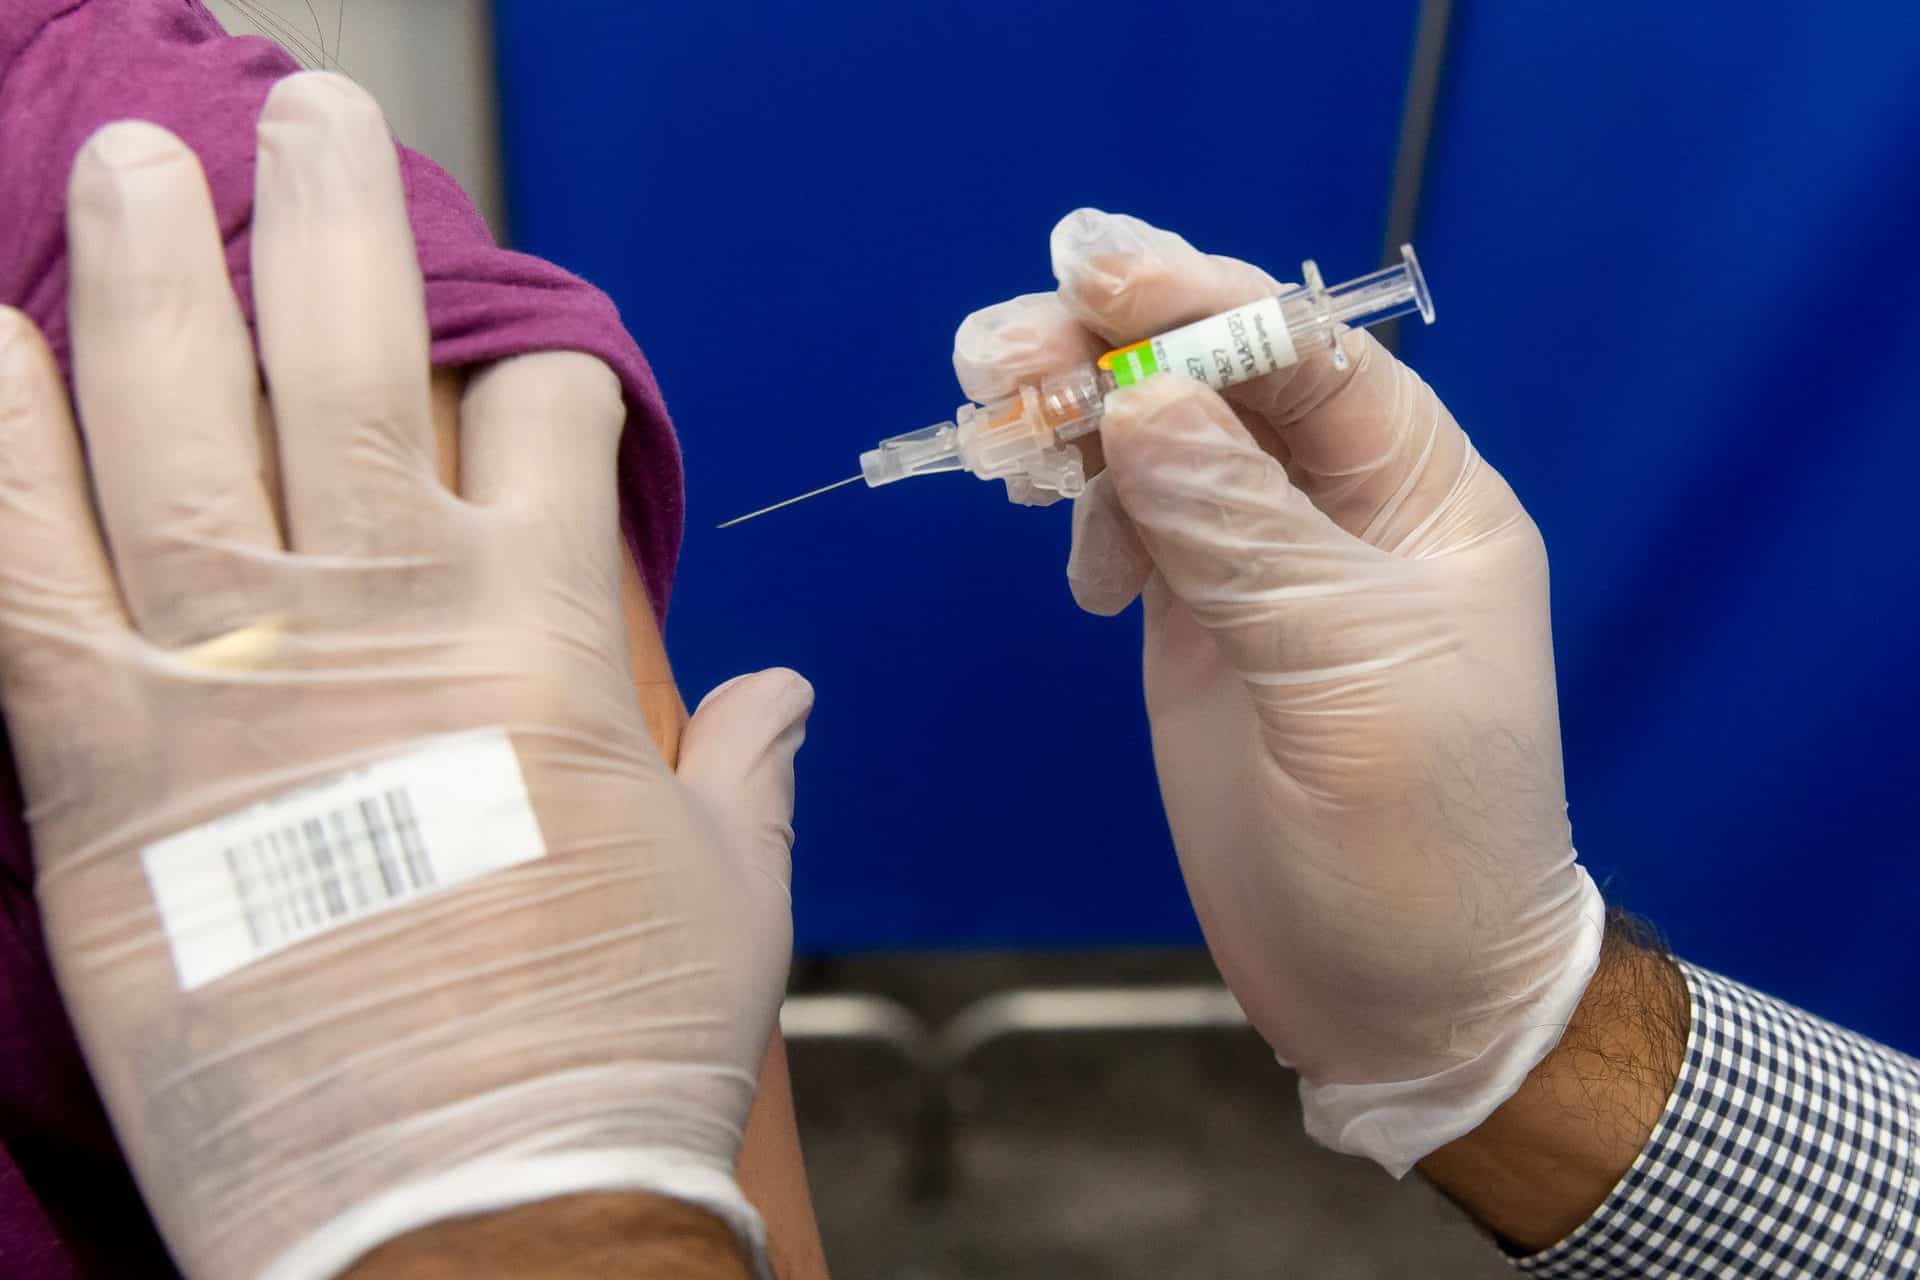 Κορωνοϊός: Ενθαρρυντικά νέα για το εμβόλιο της Οξφόρδης - Προκάλεσε ισχυρή ανοσοαπόκριση σε ηλικιωμένους